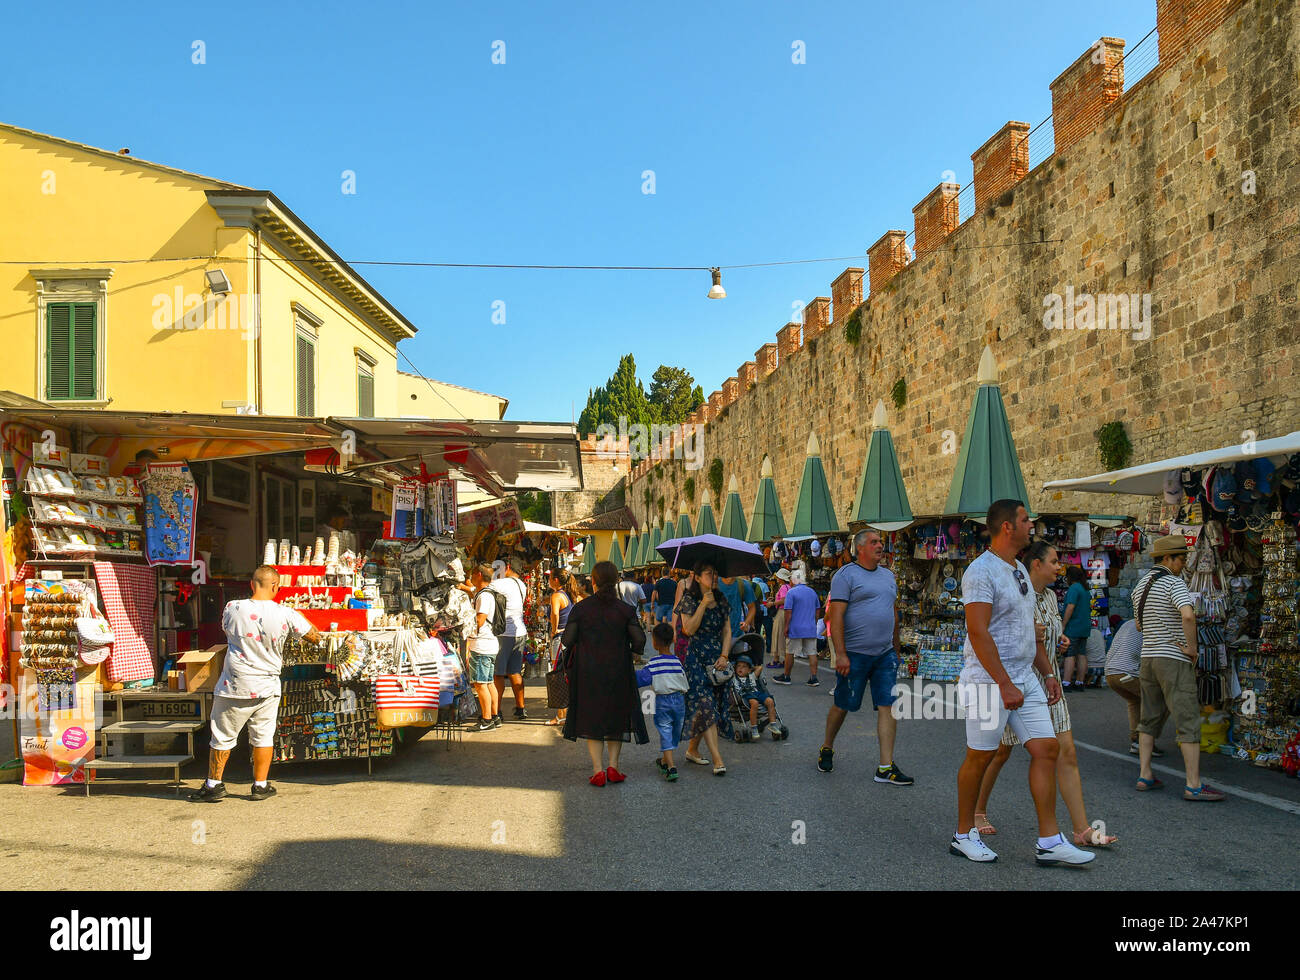 Blick auf die Straße des berühmten Reiseziel mit Menschen kaufen bei Souvenirstände und die alten Mauern der Stadt an einem sonnigen Sommertag, Pisa, Toskana, Italien Stockfoto